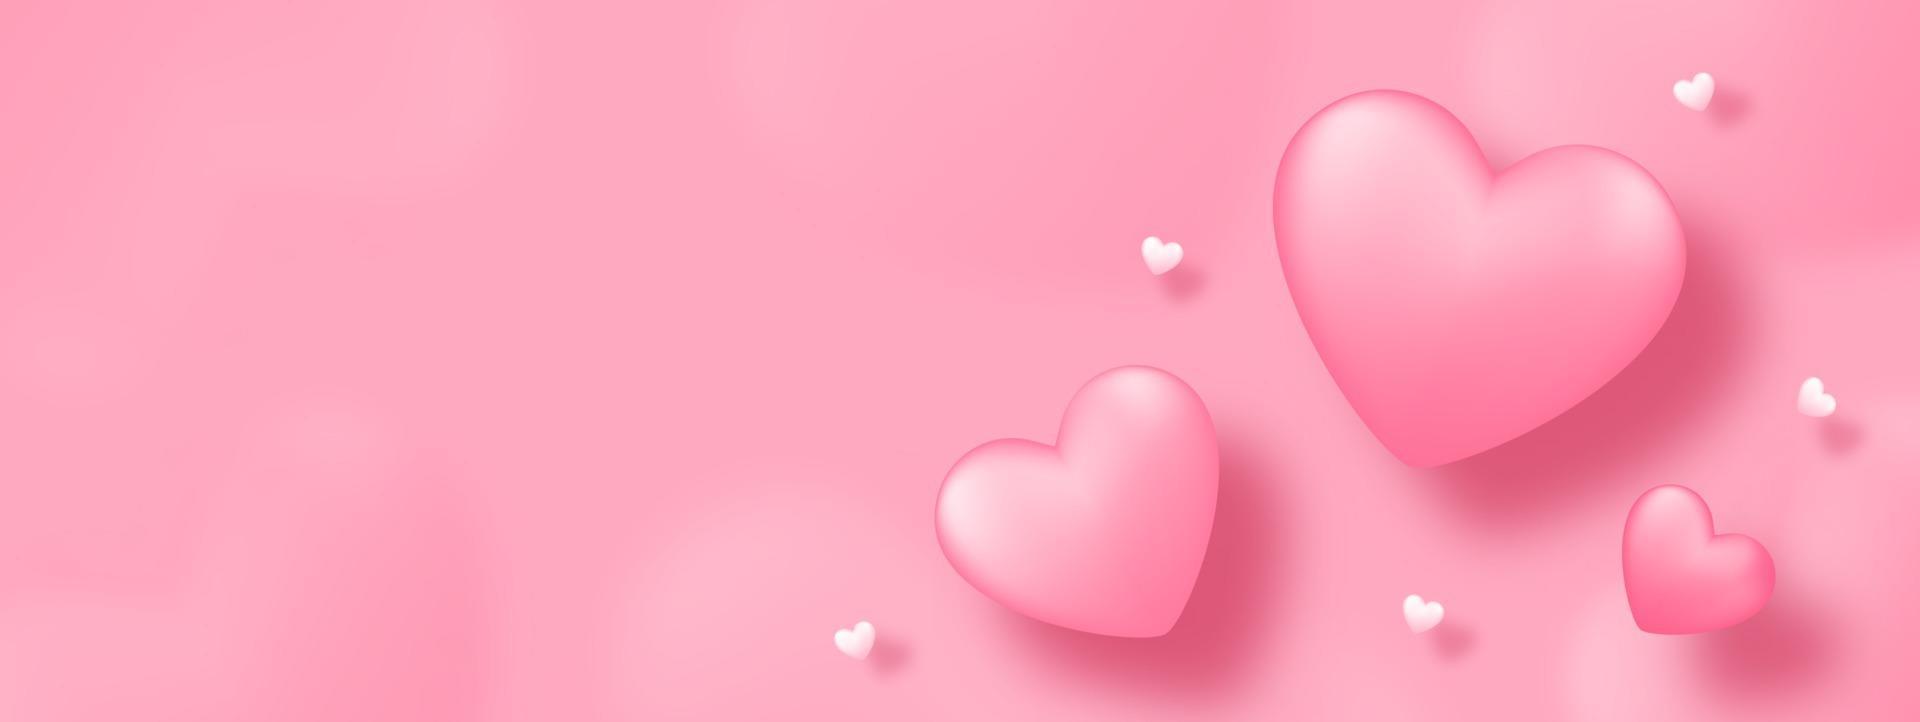 arte em papel com coração no fundo rosa. amo o projeto de conceito para o feliz dia das mães, dia dos namorados, dia de aniversário. banner e design de modelo de saudação. vetor